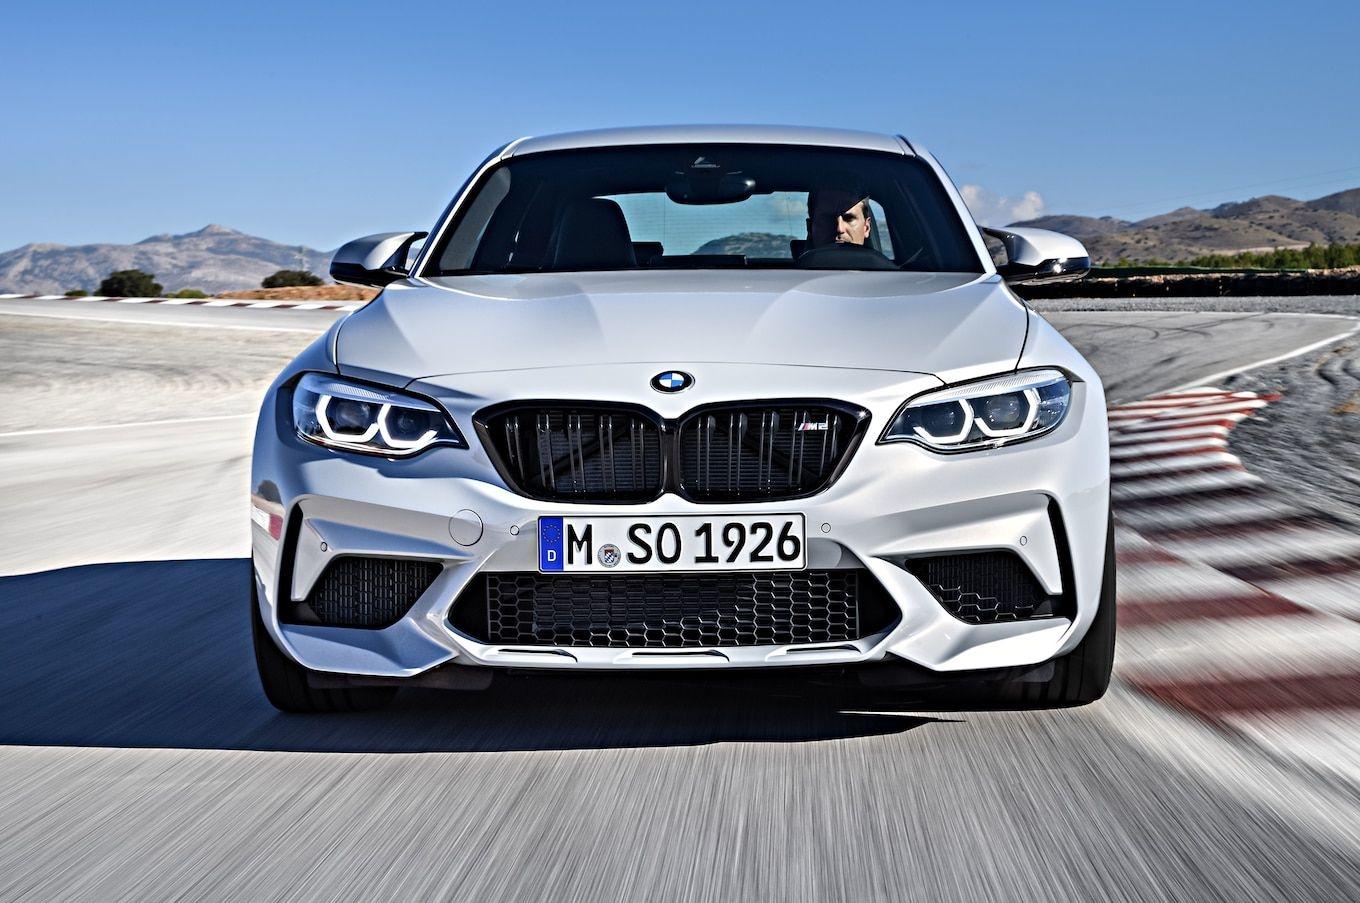 New 2019 BMW M3 Interior Wallpaper. New Autocar Blog